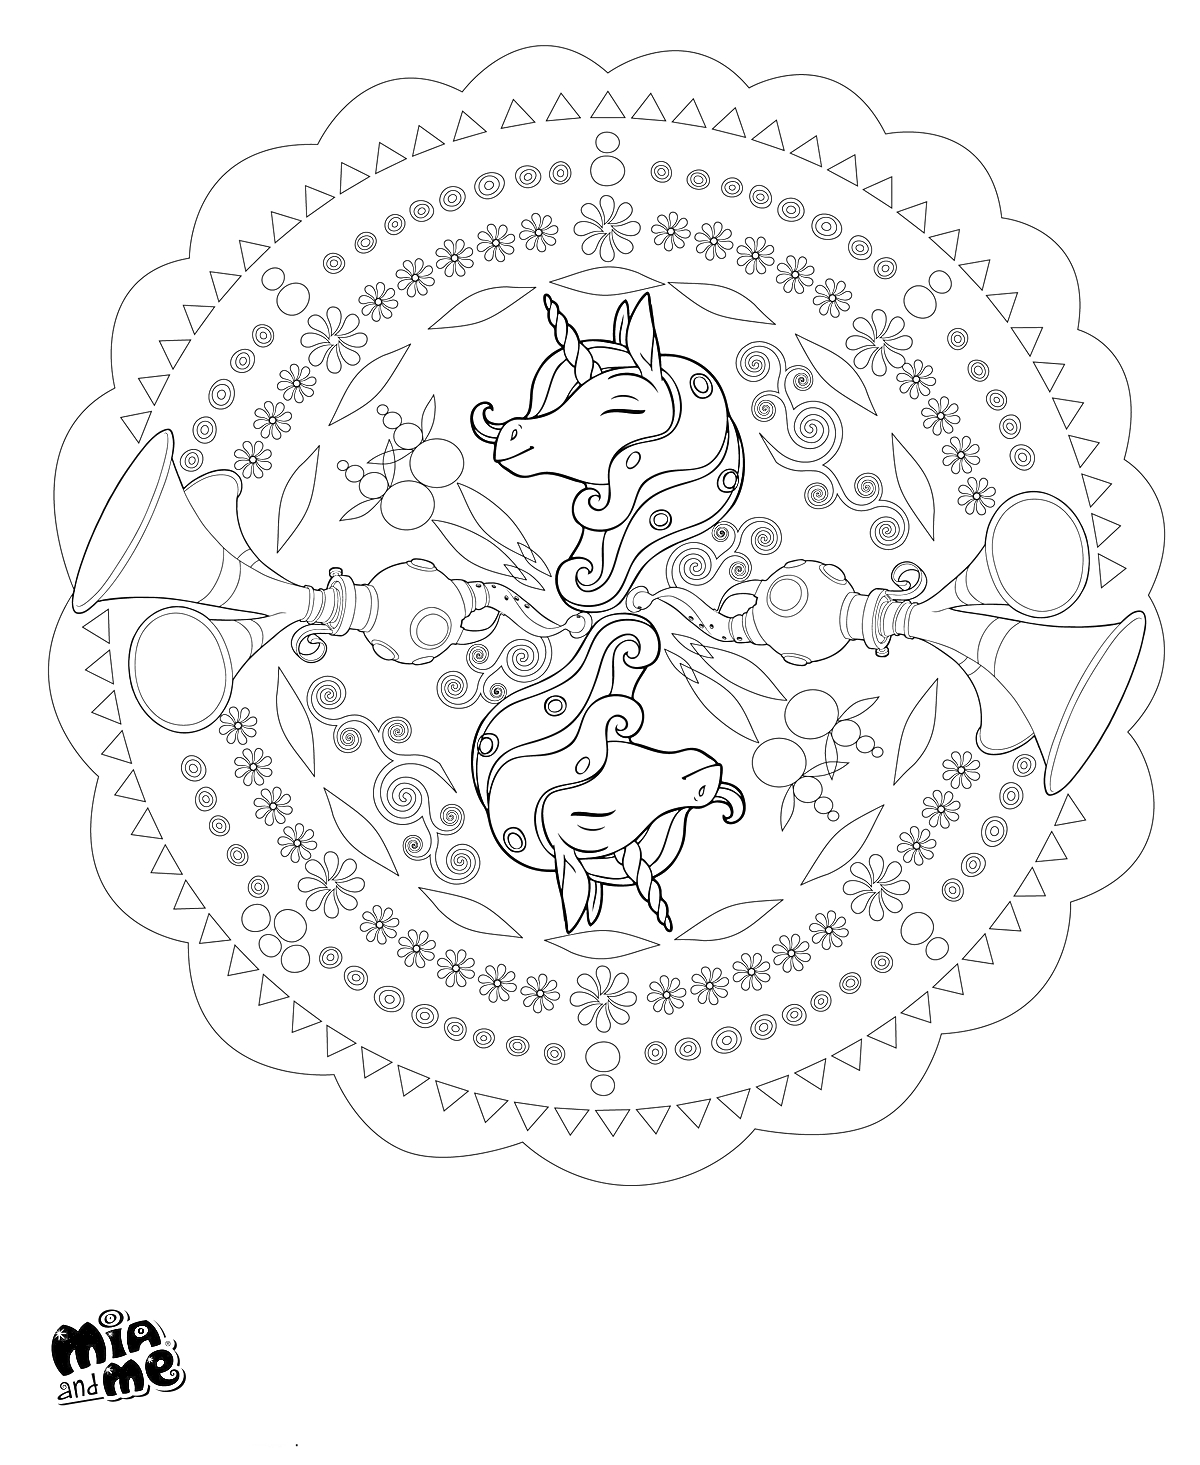 Раскраска Две лошади в центре круглого мандалы с цветами и узорами, логотип 